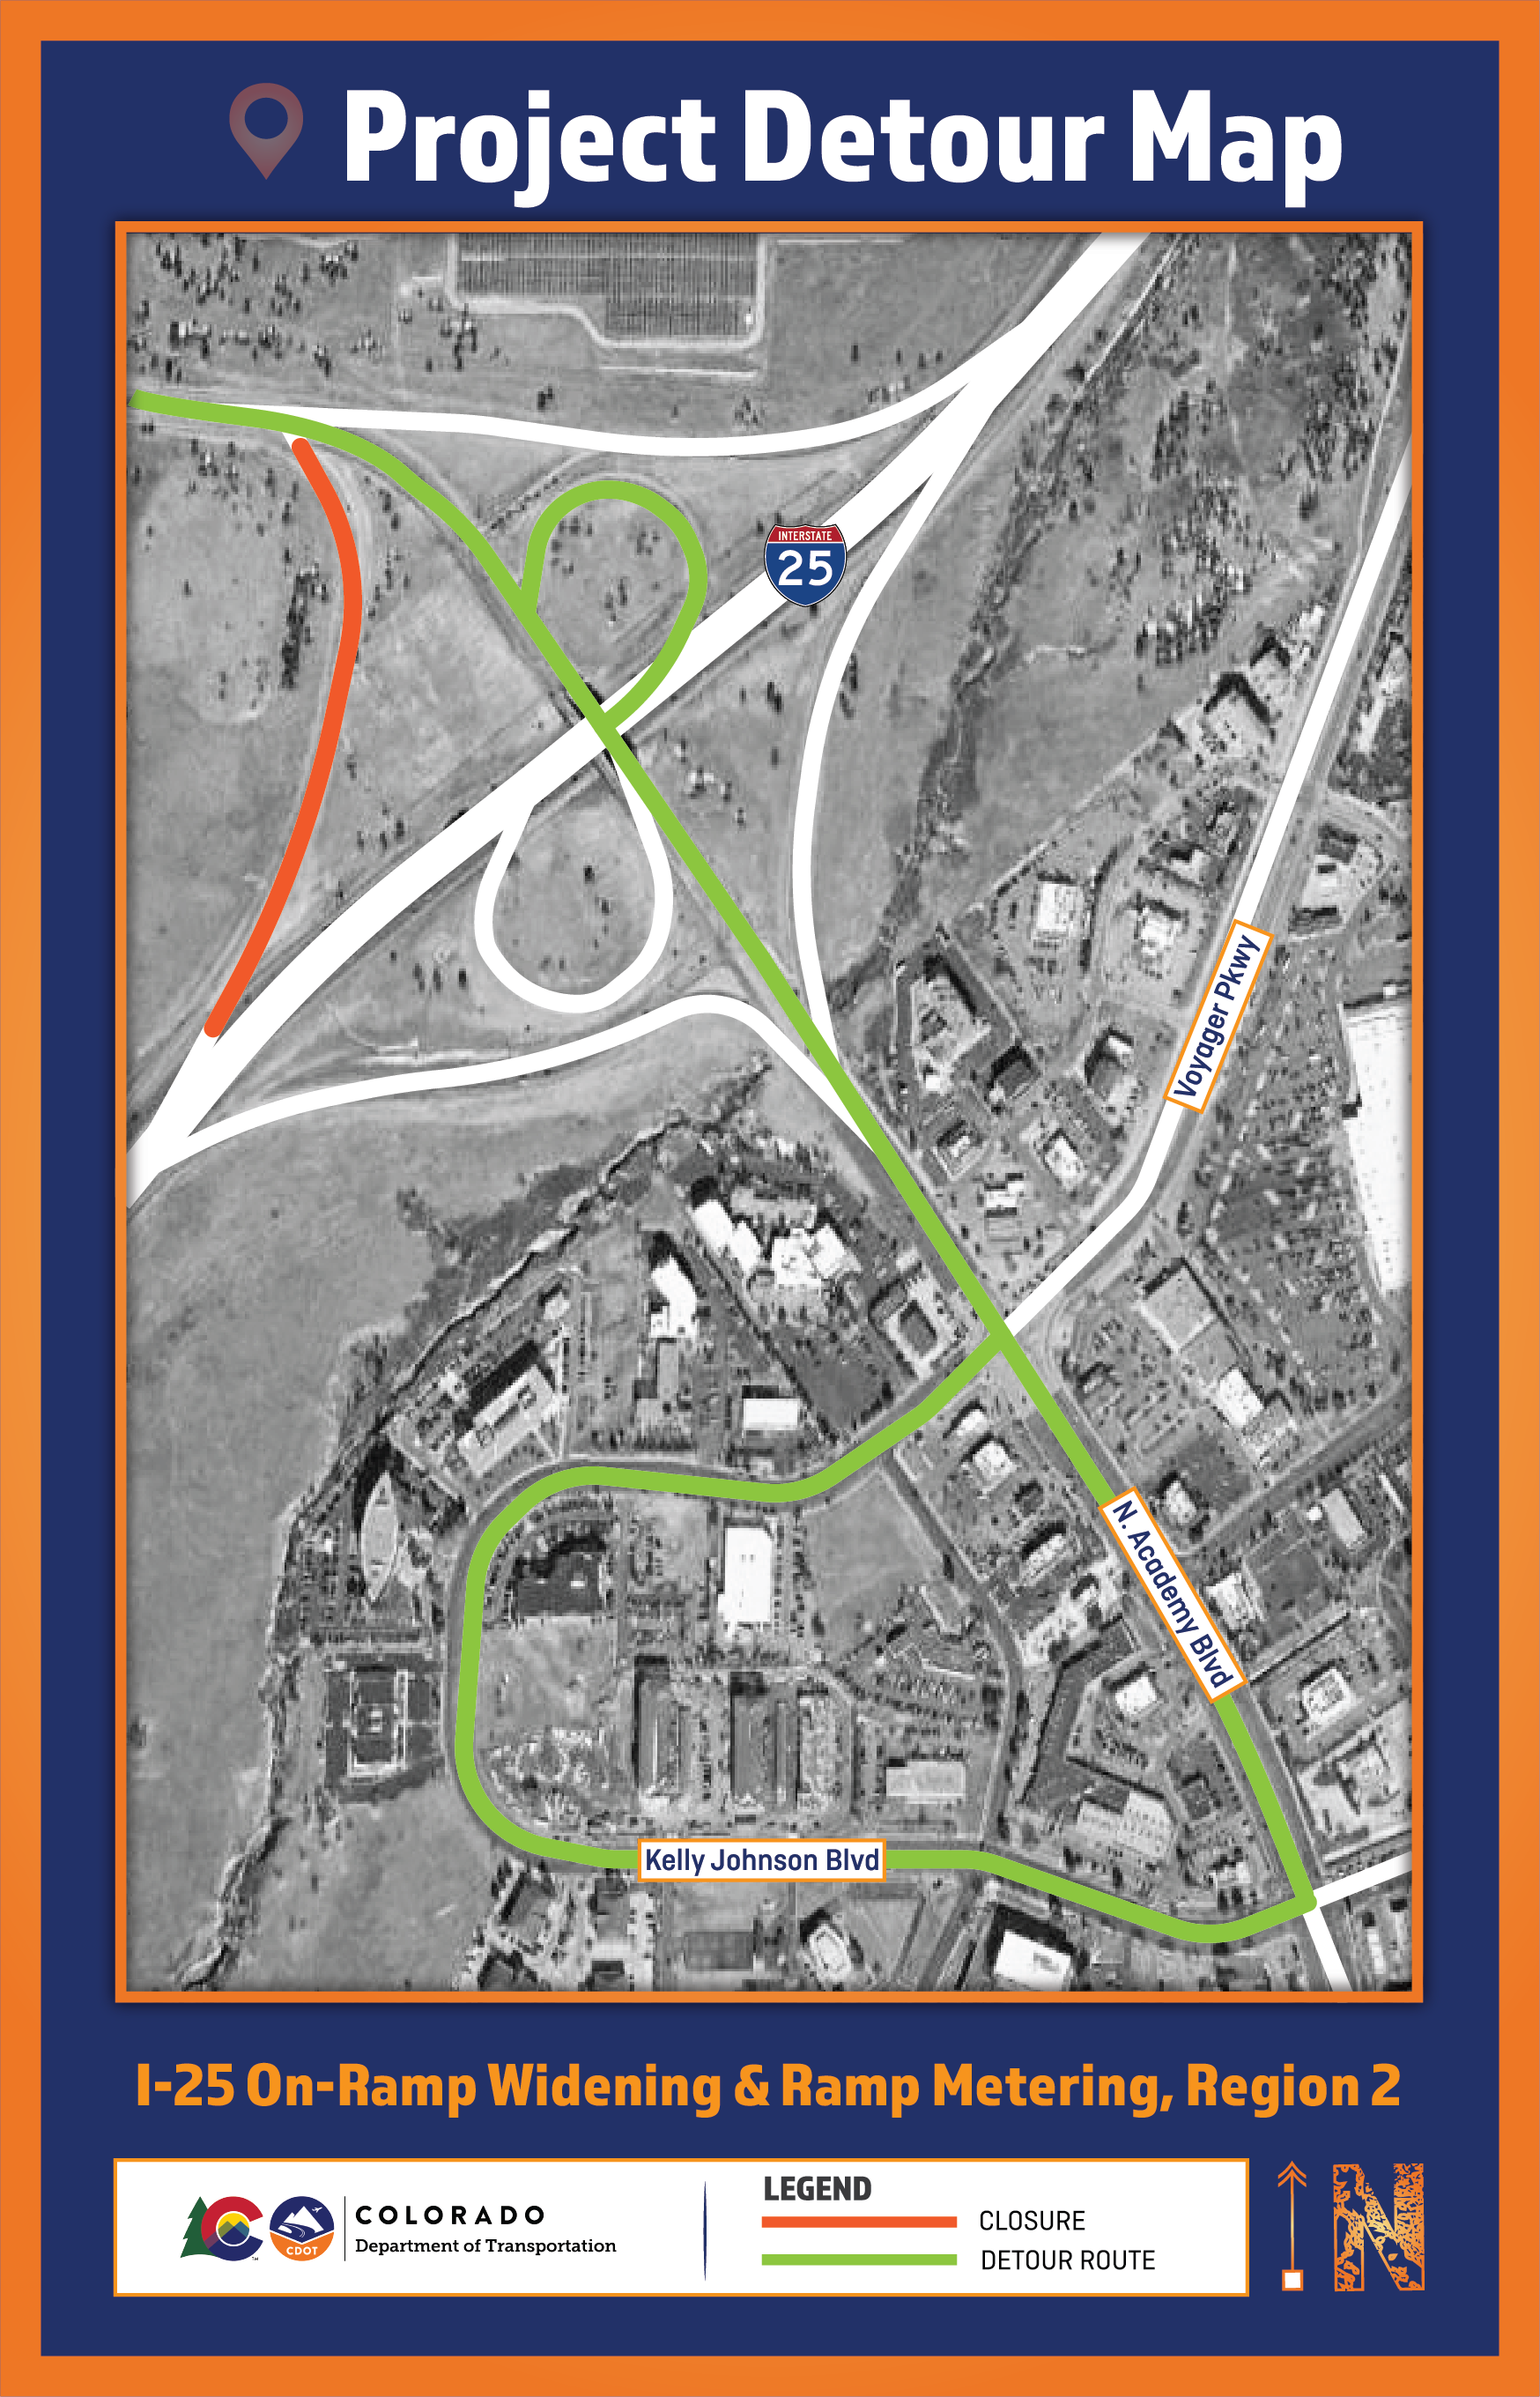 I-25 On-Ramp Widening and Ramp Metering R2 Detour Maps 2 8.18.22-02.png detail image